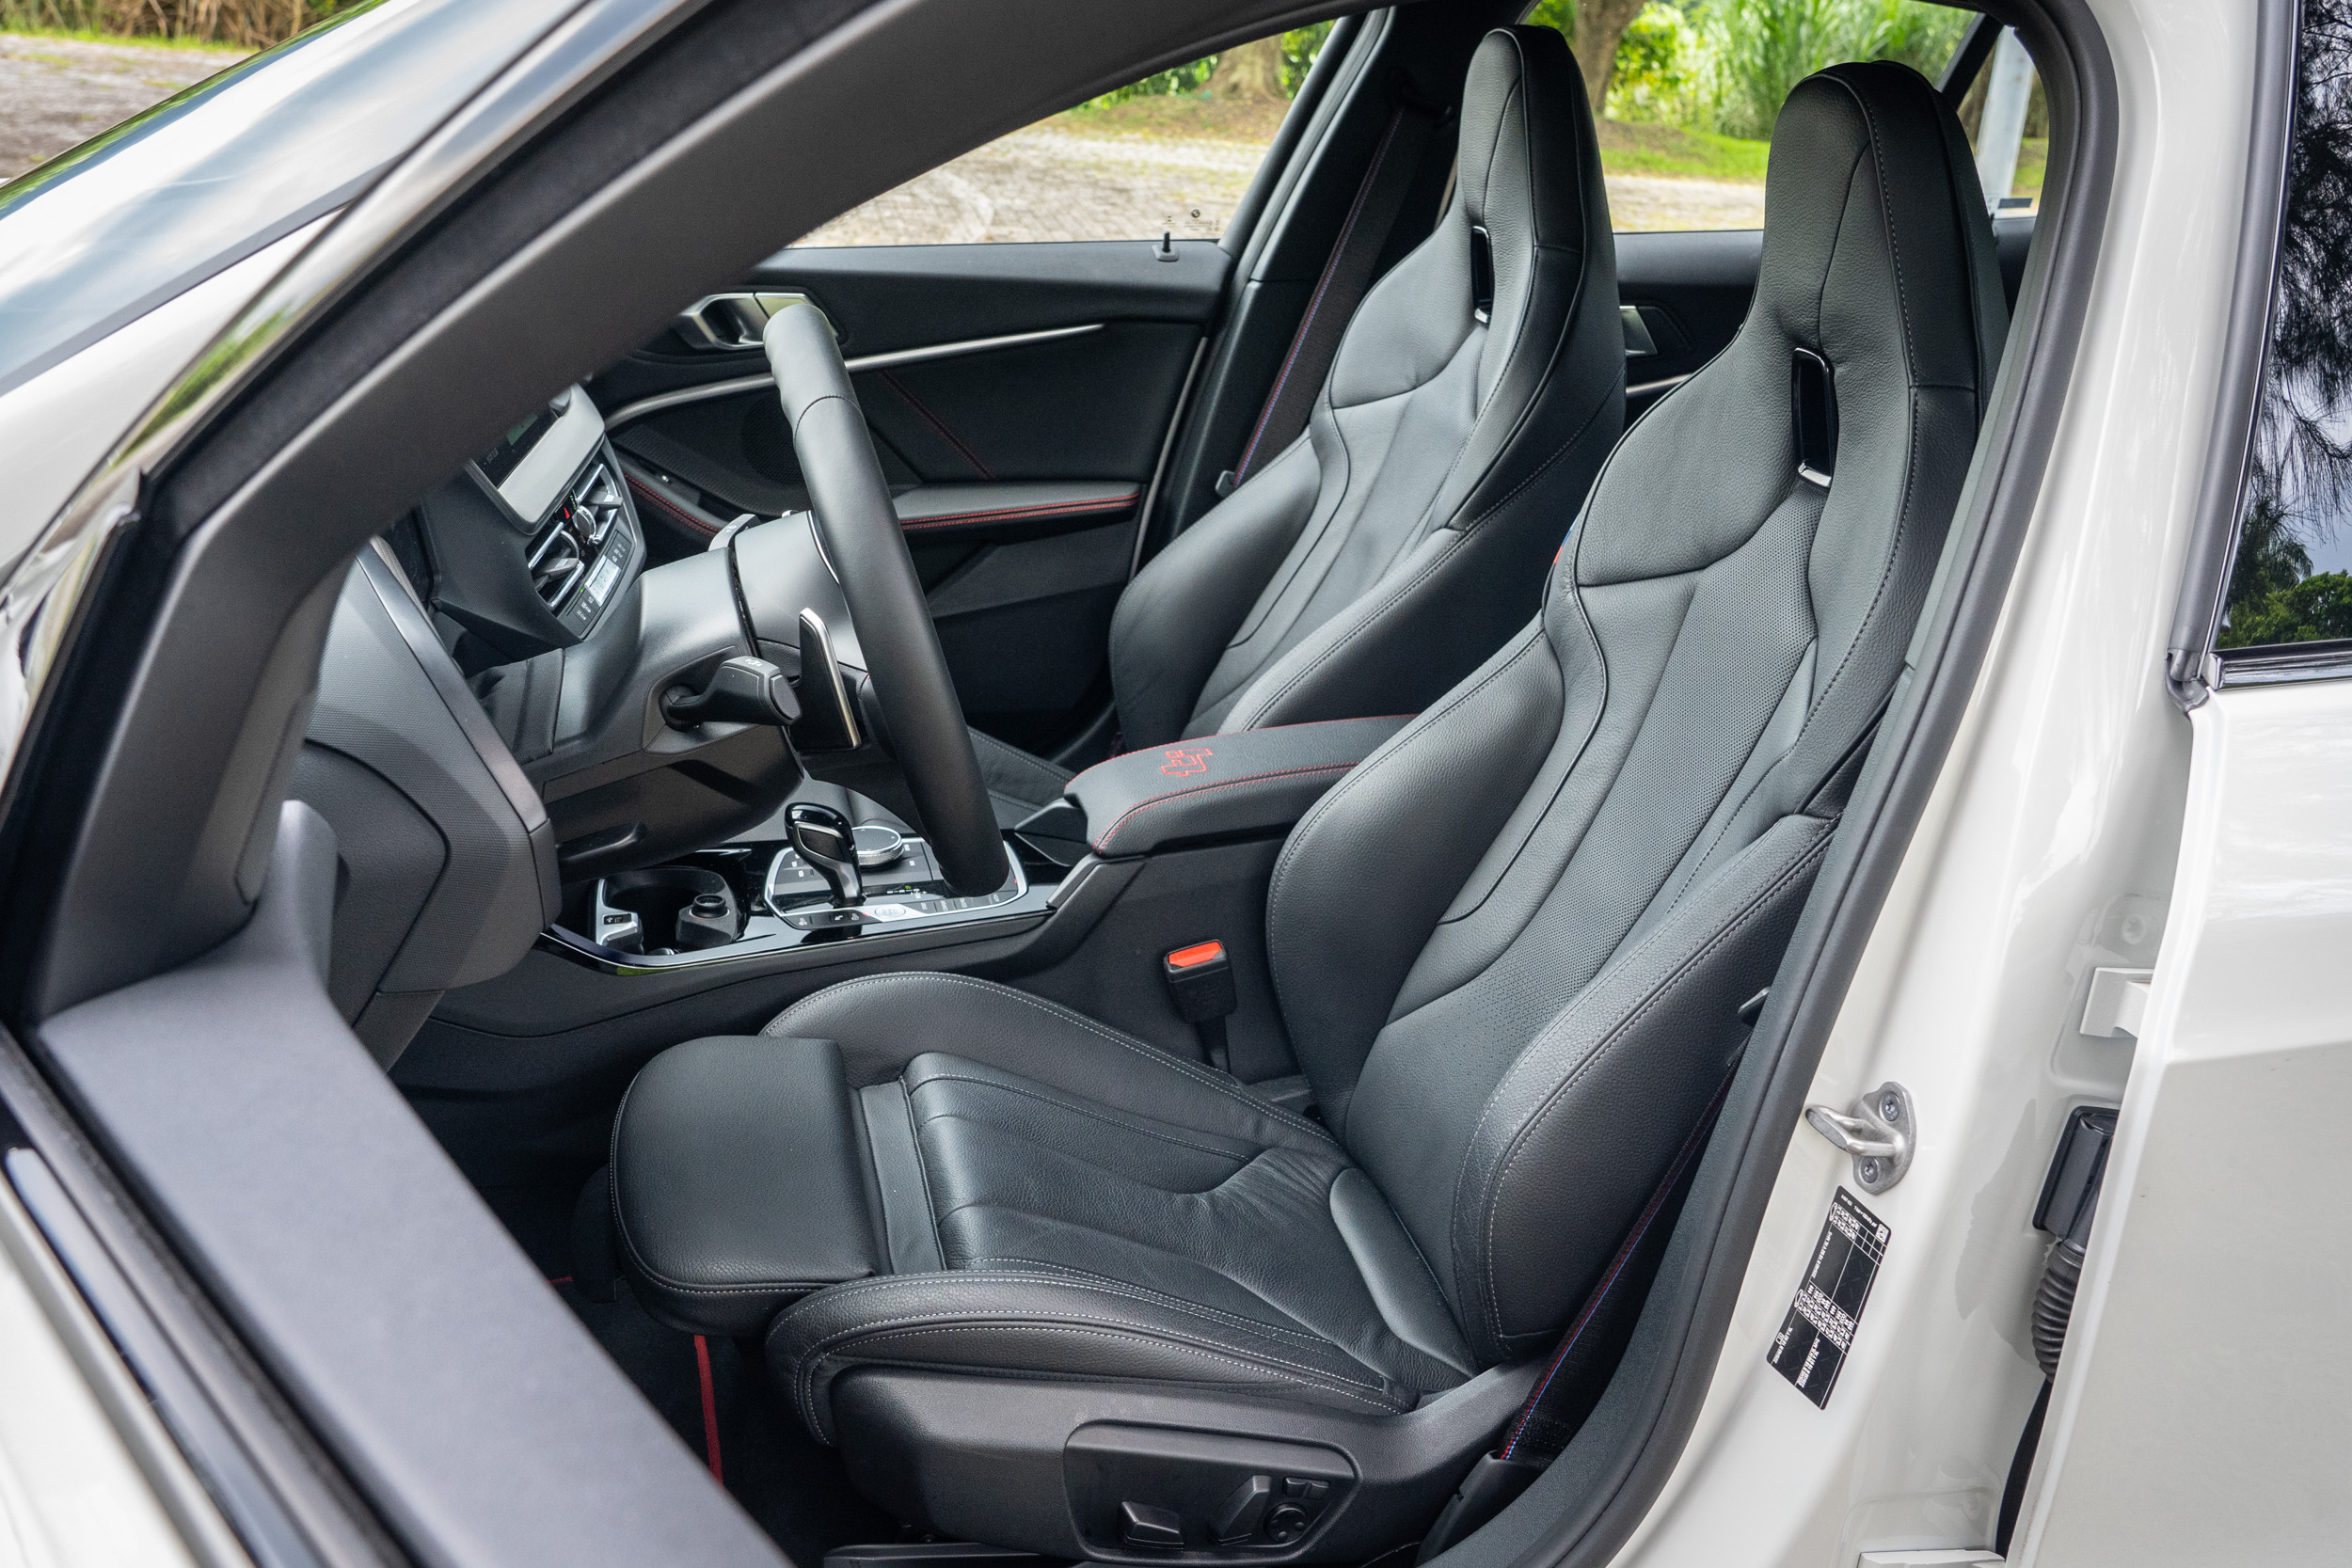 M 雙前座跑車座椅具備電動調整與電動腰靠功能。